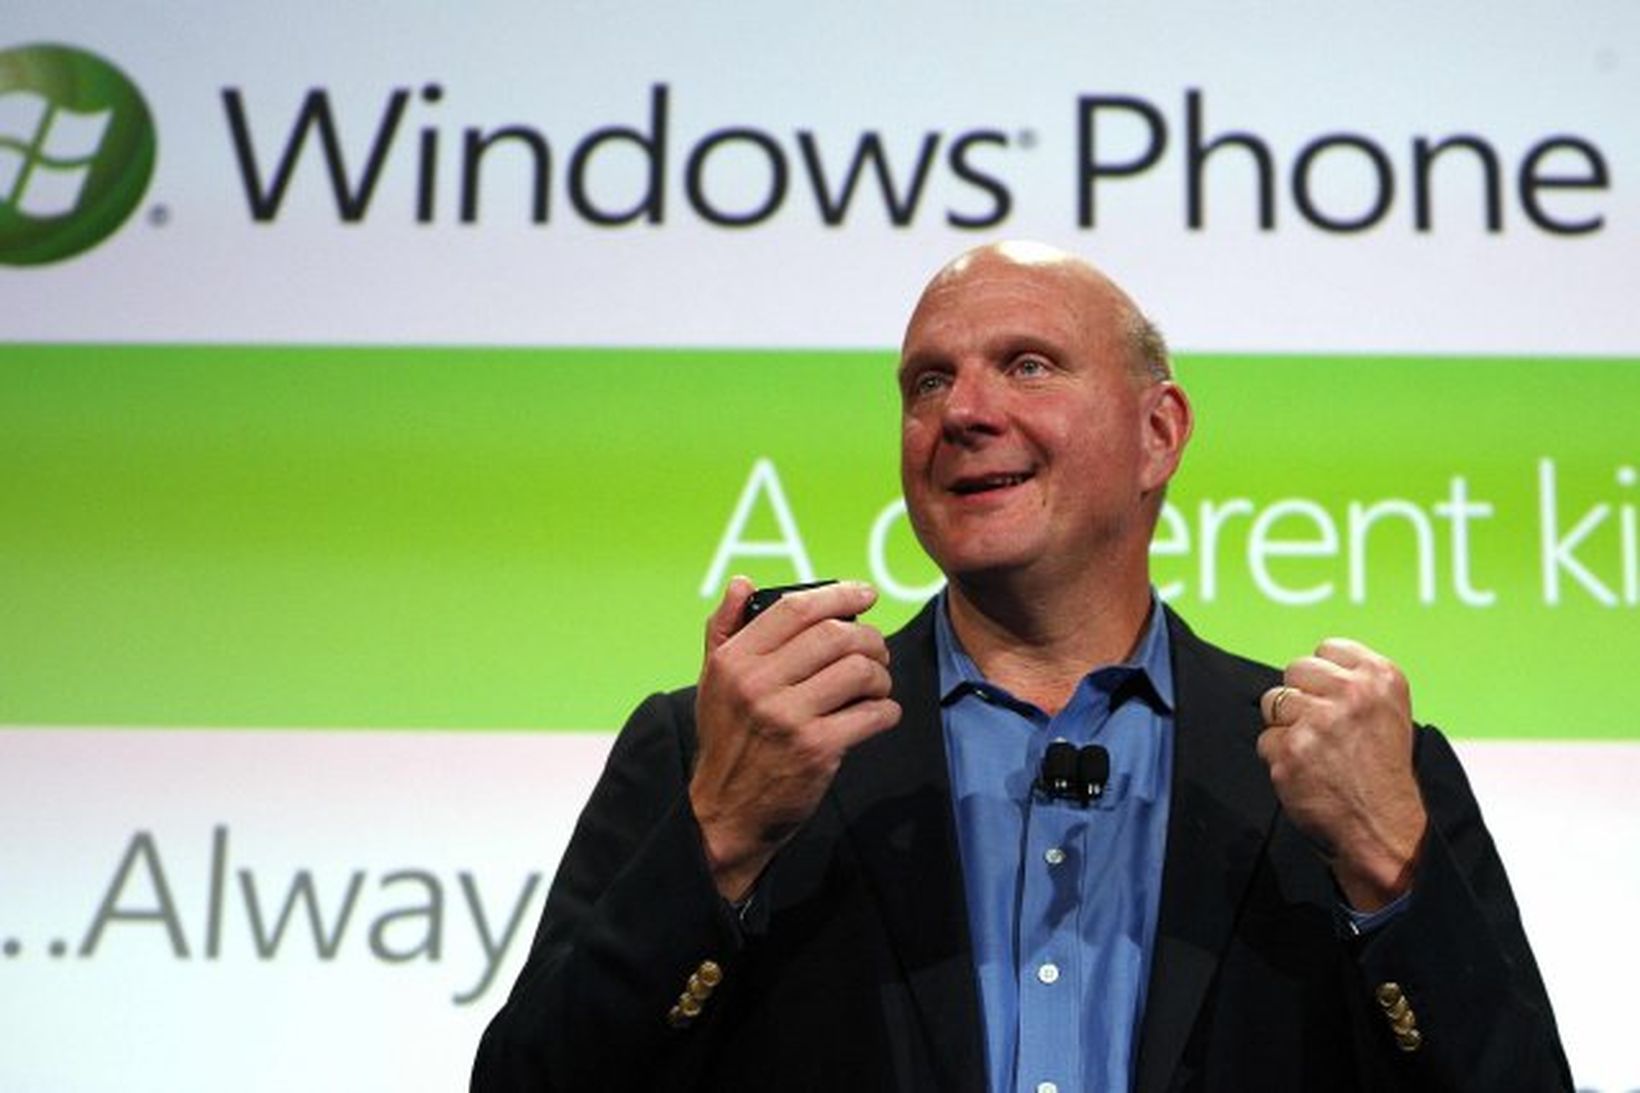 Steve Ballmer, forstjóri Microsoft, hleypti Windows Phone 7 stýrikerfinu af …